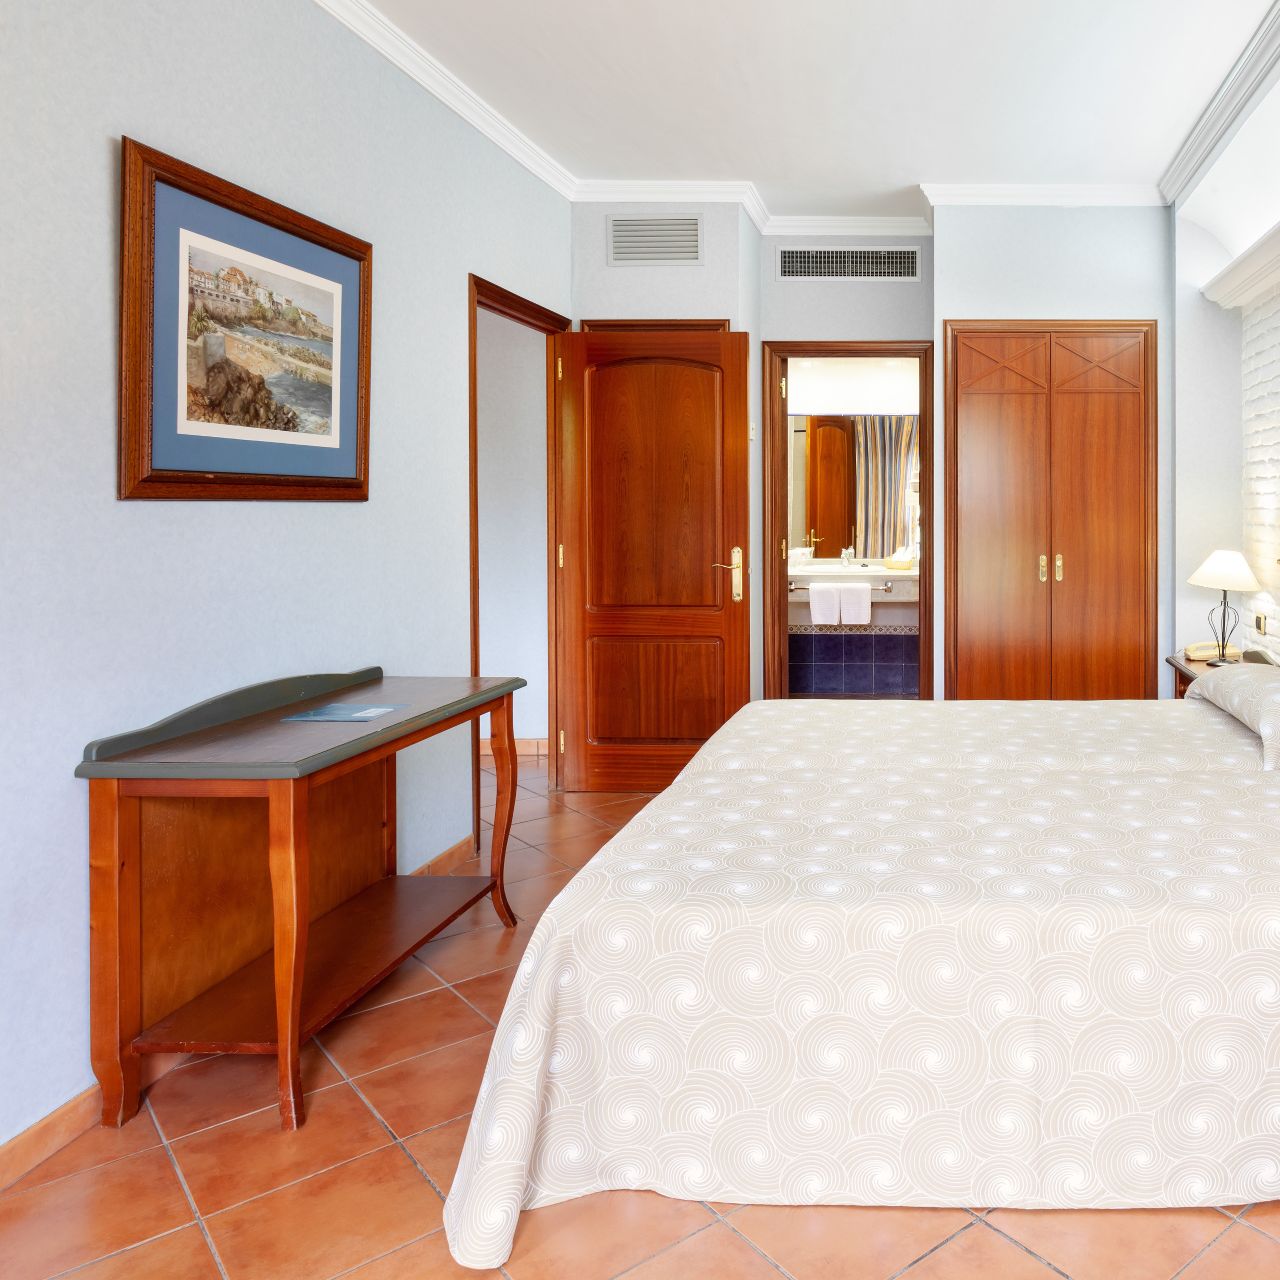 Hotel AluaSoul Orotava Valley - Adults only in Puerto de la Cruz - HOTEL DE